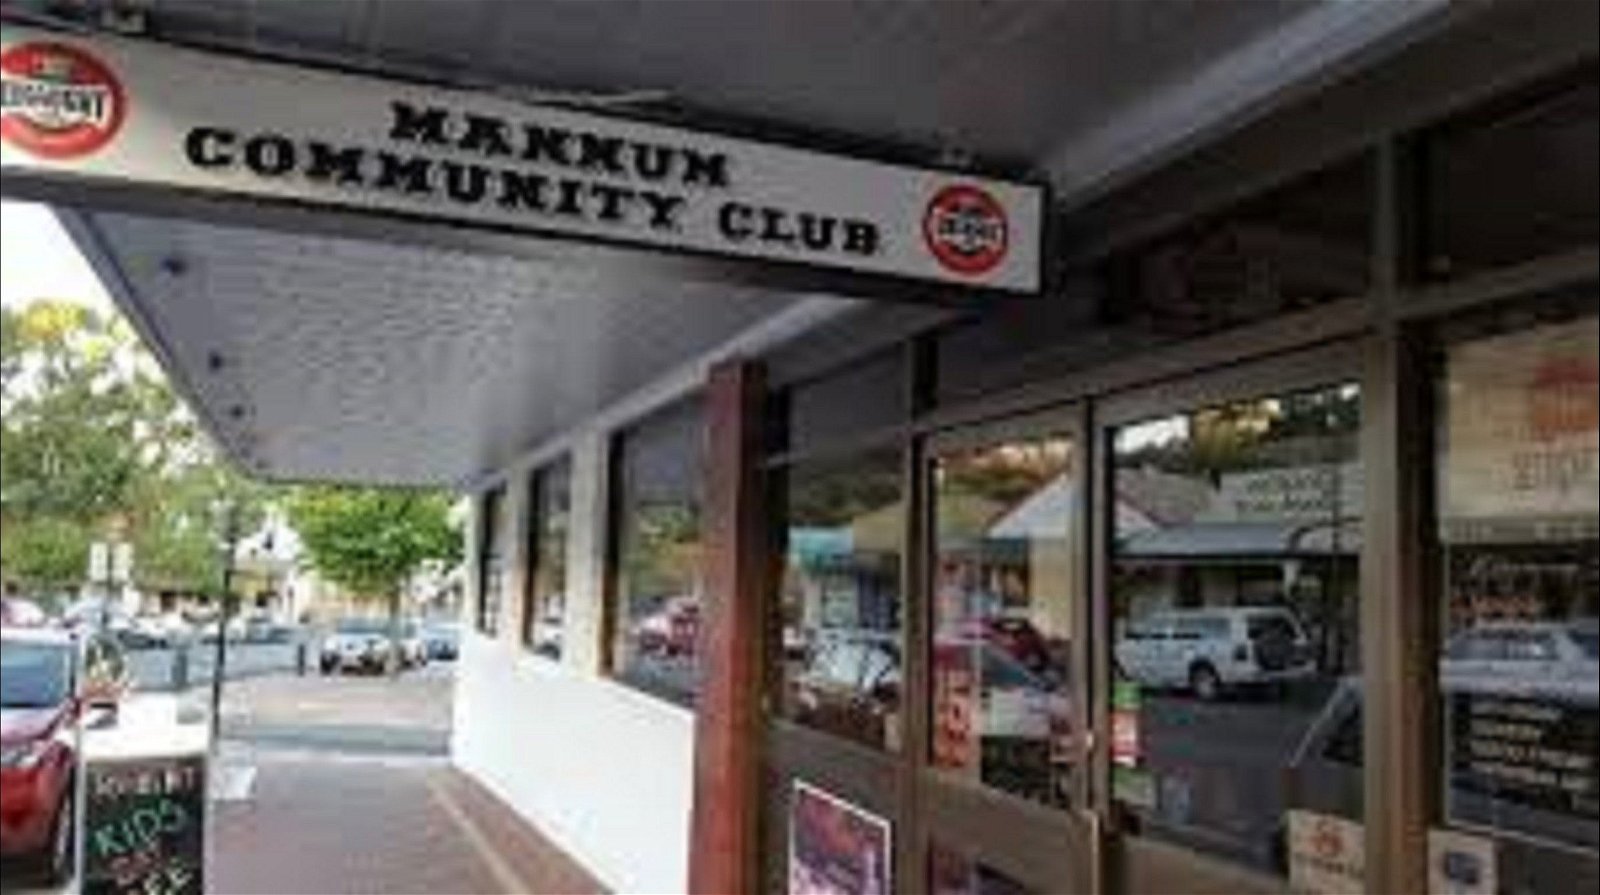 Mannum Community Club